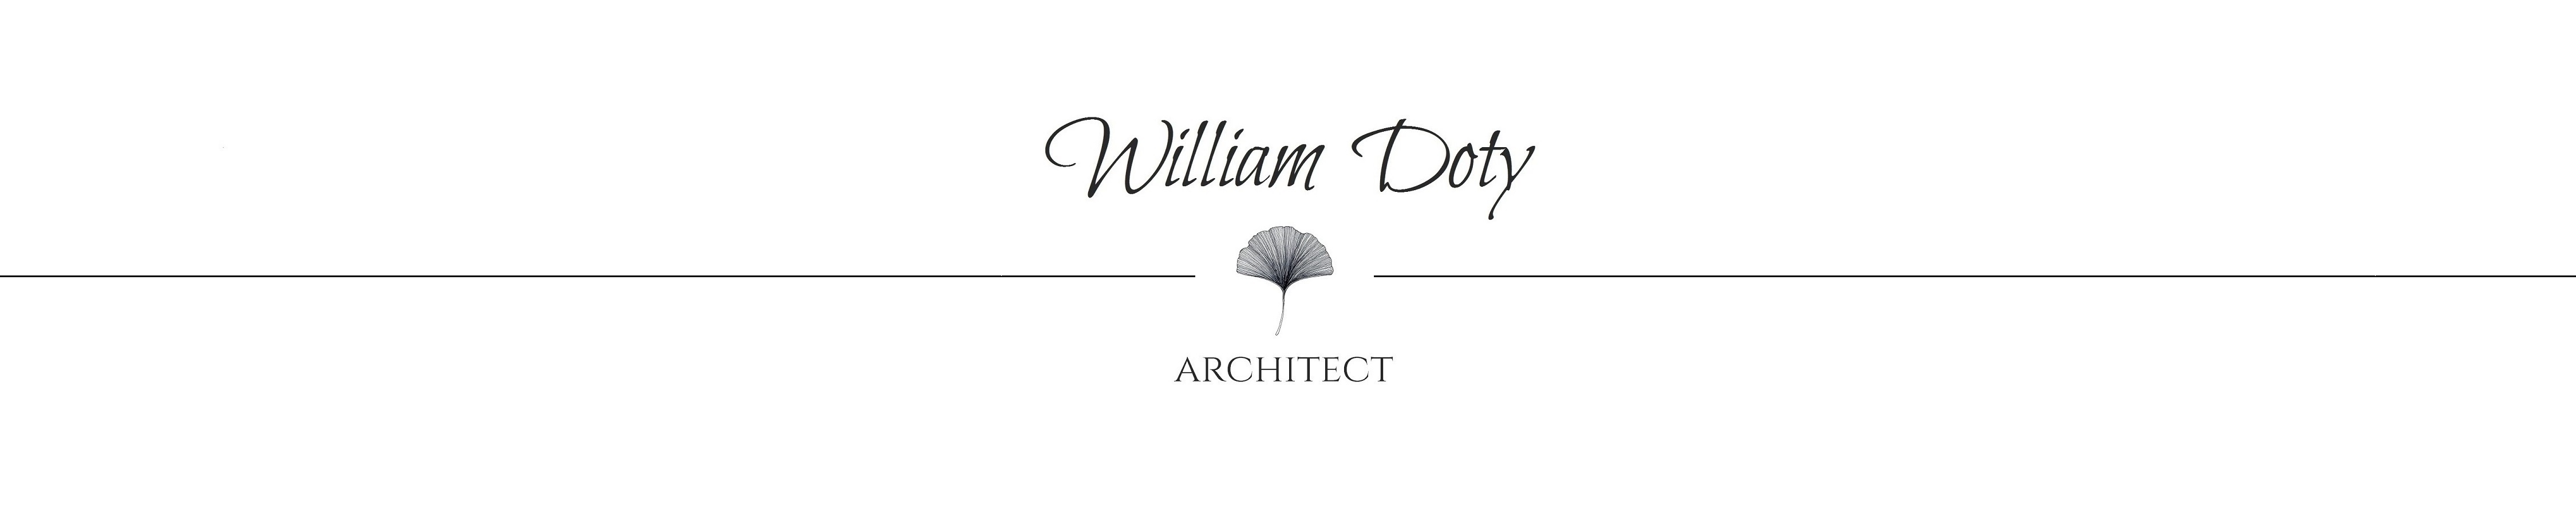 William A. Doty